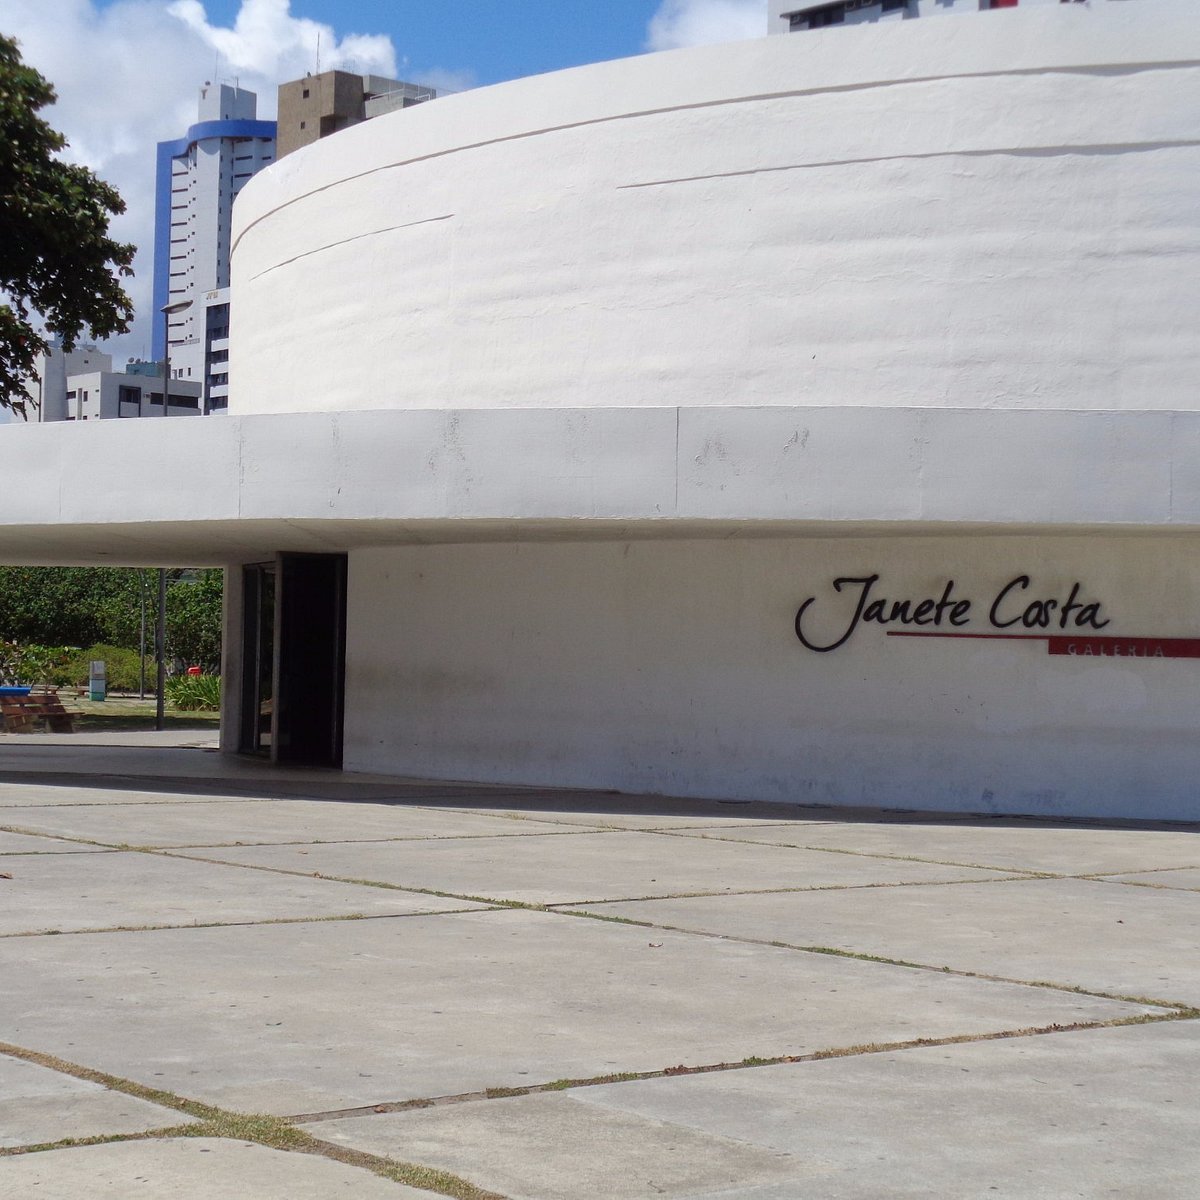 O que fazer à noite em Boa Viagem Recife Galeria Janete Costa